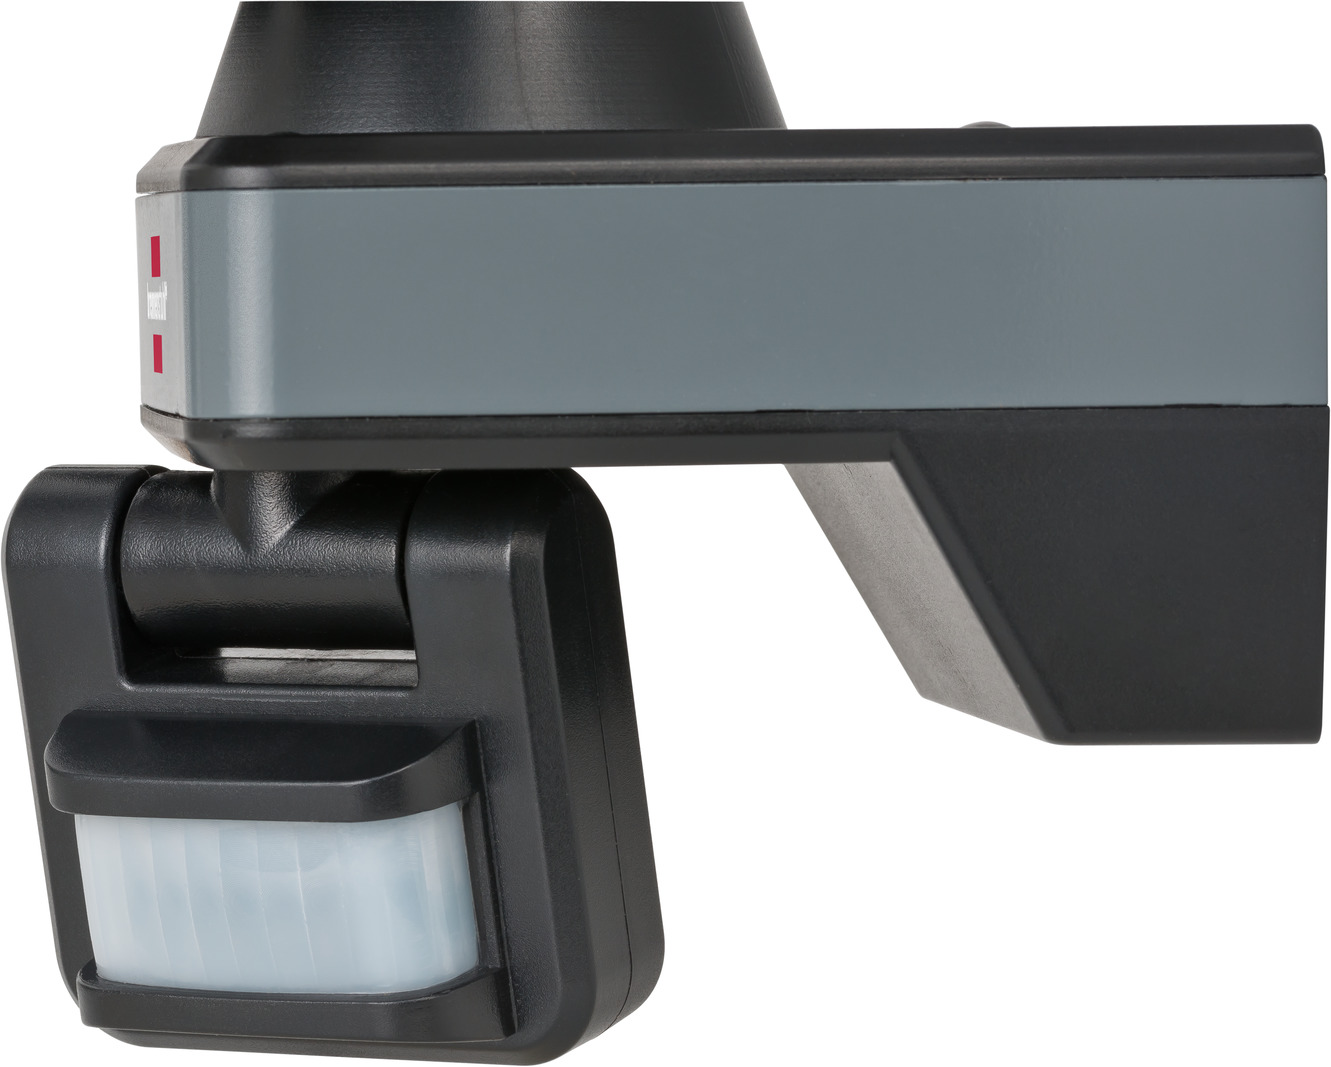 brennenstuhl®Connect LED WiFi Strahler mit Infrarot-Bewegungsmelder WF 2050  | brennenstuhl®